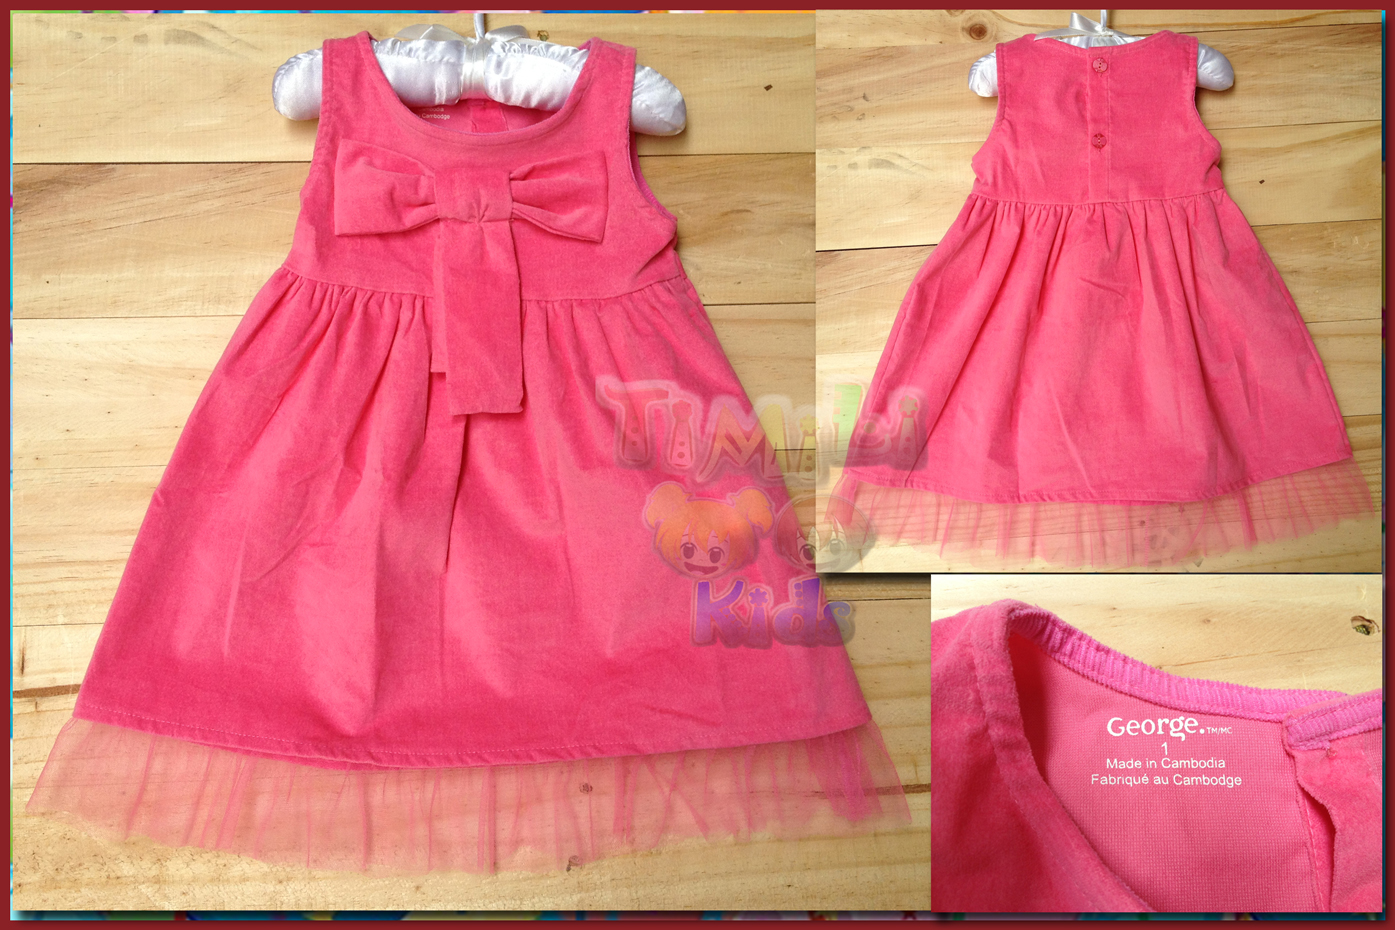 Đầm nhung bé gái hiệu George, hàng xuất made in cambodia, màu hồng.